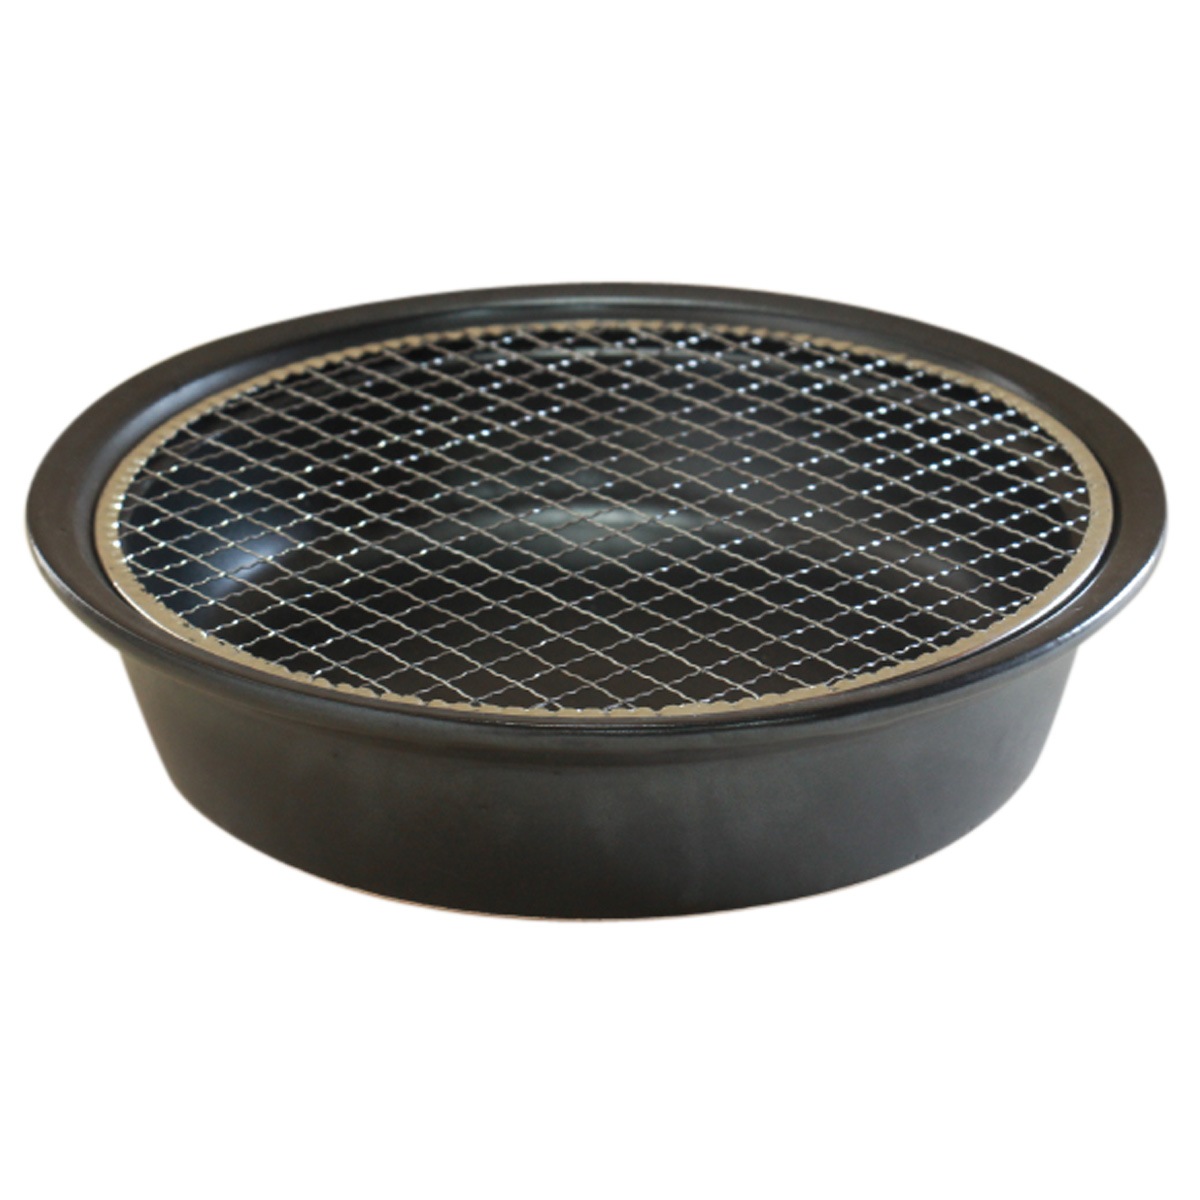 競売 陶のくんせい鍋 燻製器 土鍋 家庭用 日本製 OR-60-1901 調理器具 